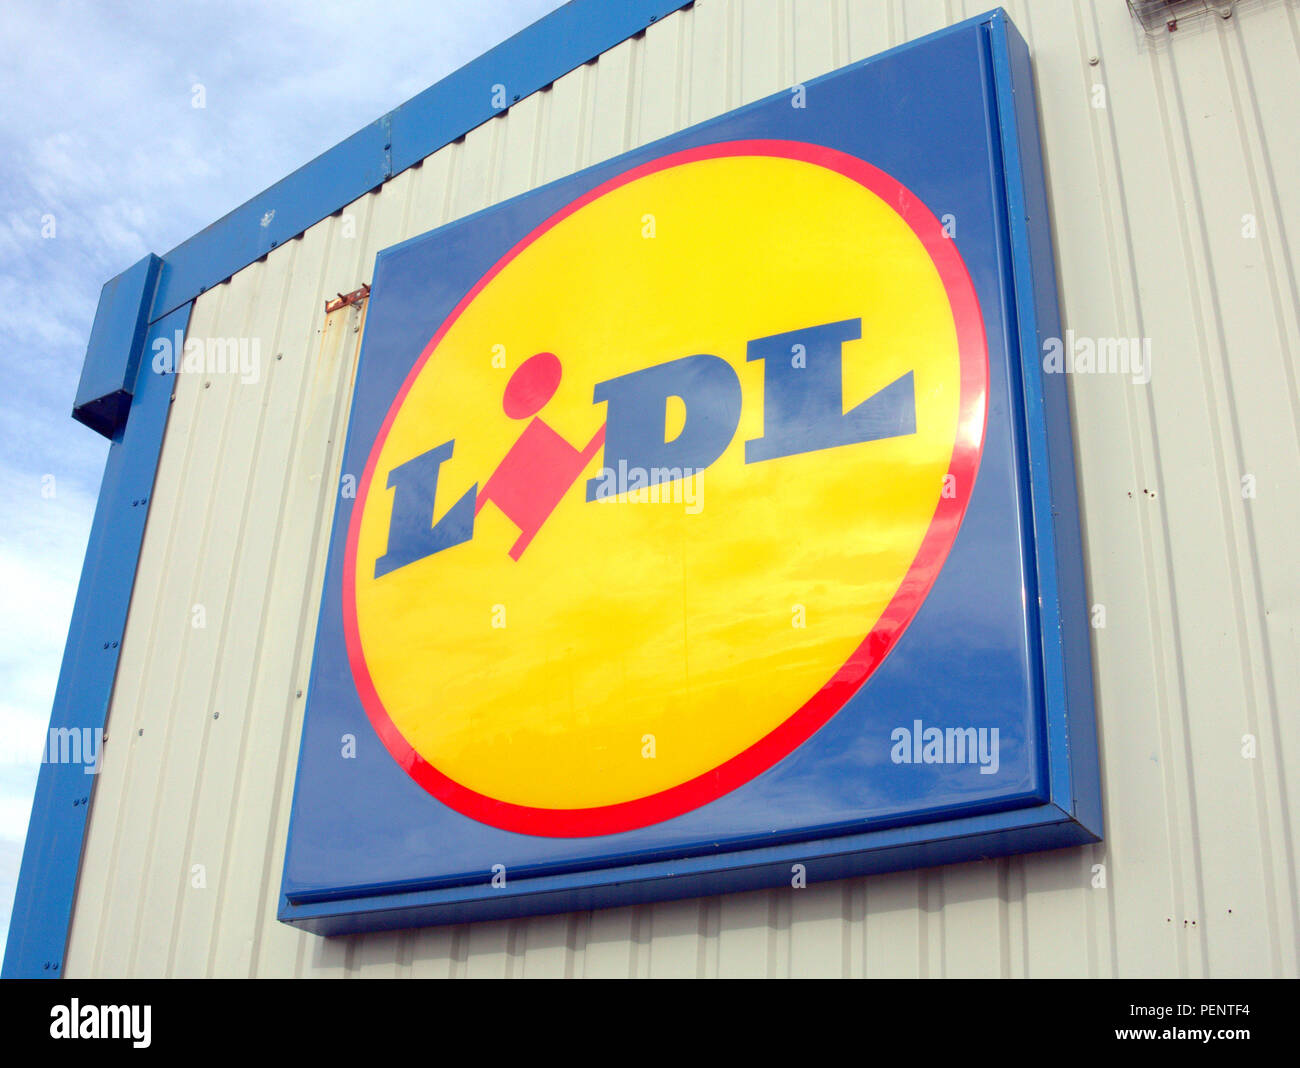 LIDL supermarket sign close up lidl symbol logo Stock Photo